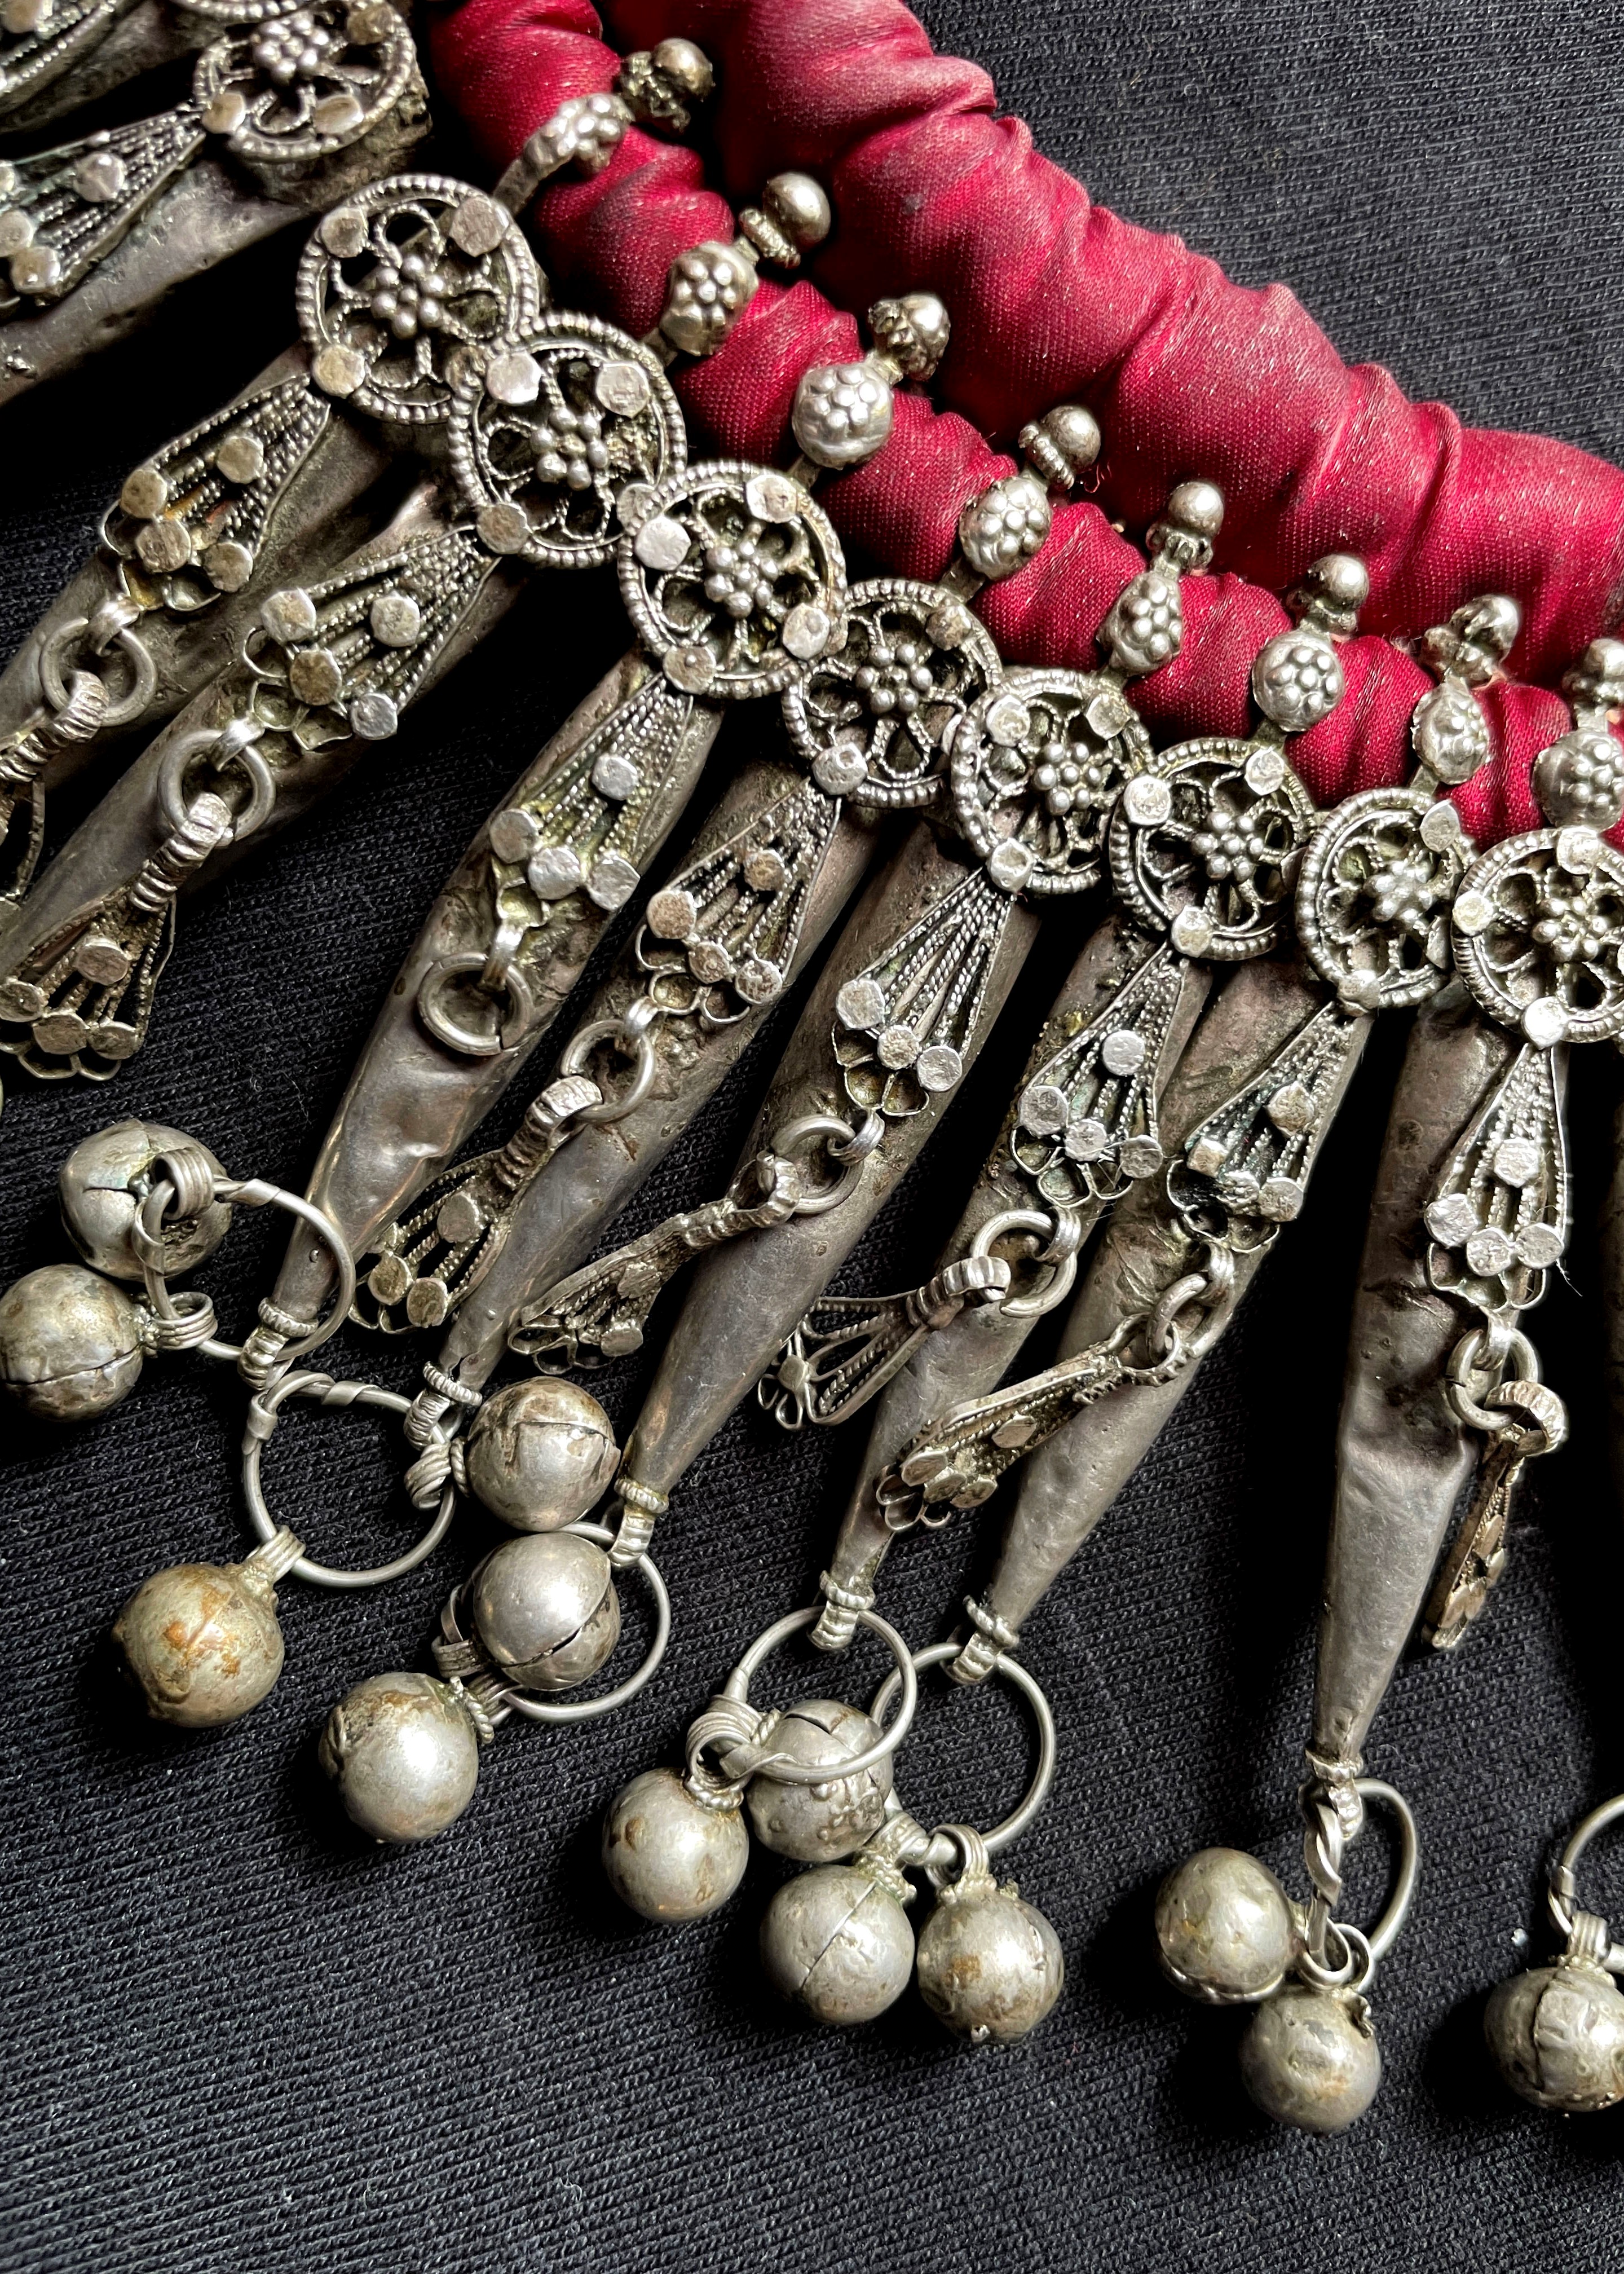 Yemen wedding necklace detail